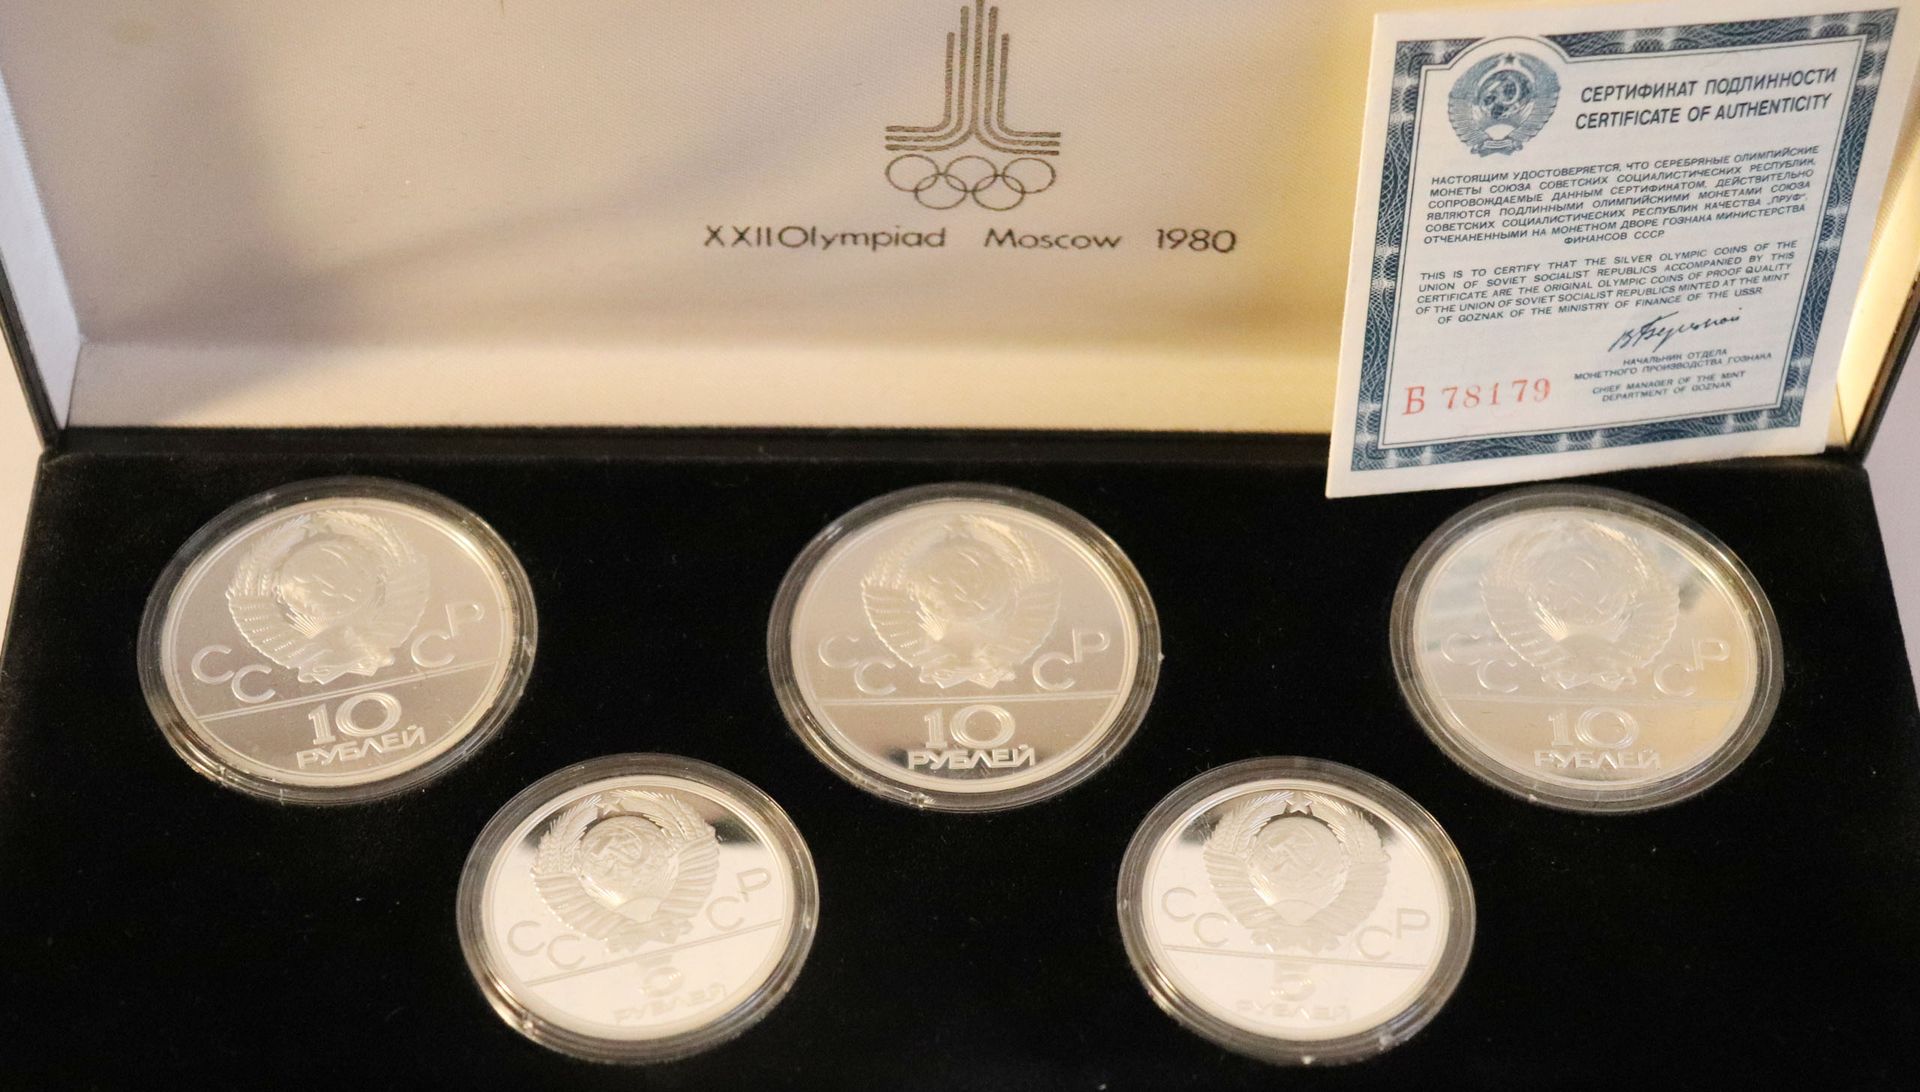 Null Coffret de 5 médailles en argent, XXII Olympiad Moscow 1980.

Poids total:1&hellip;